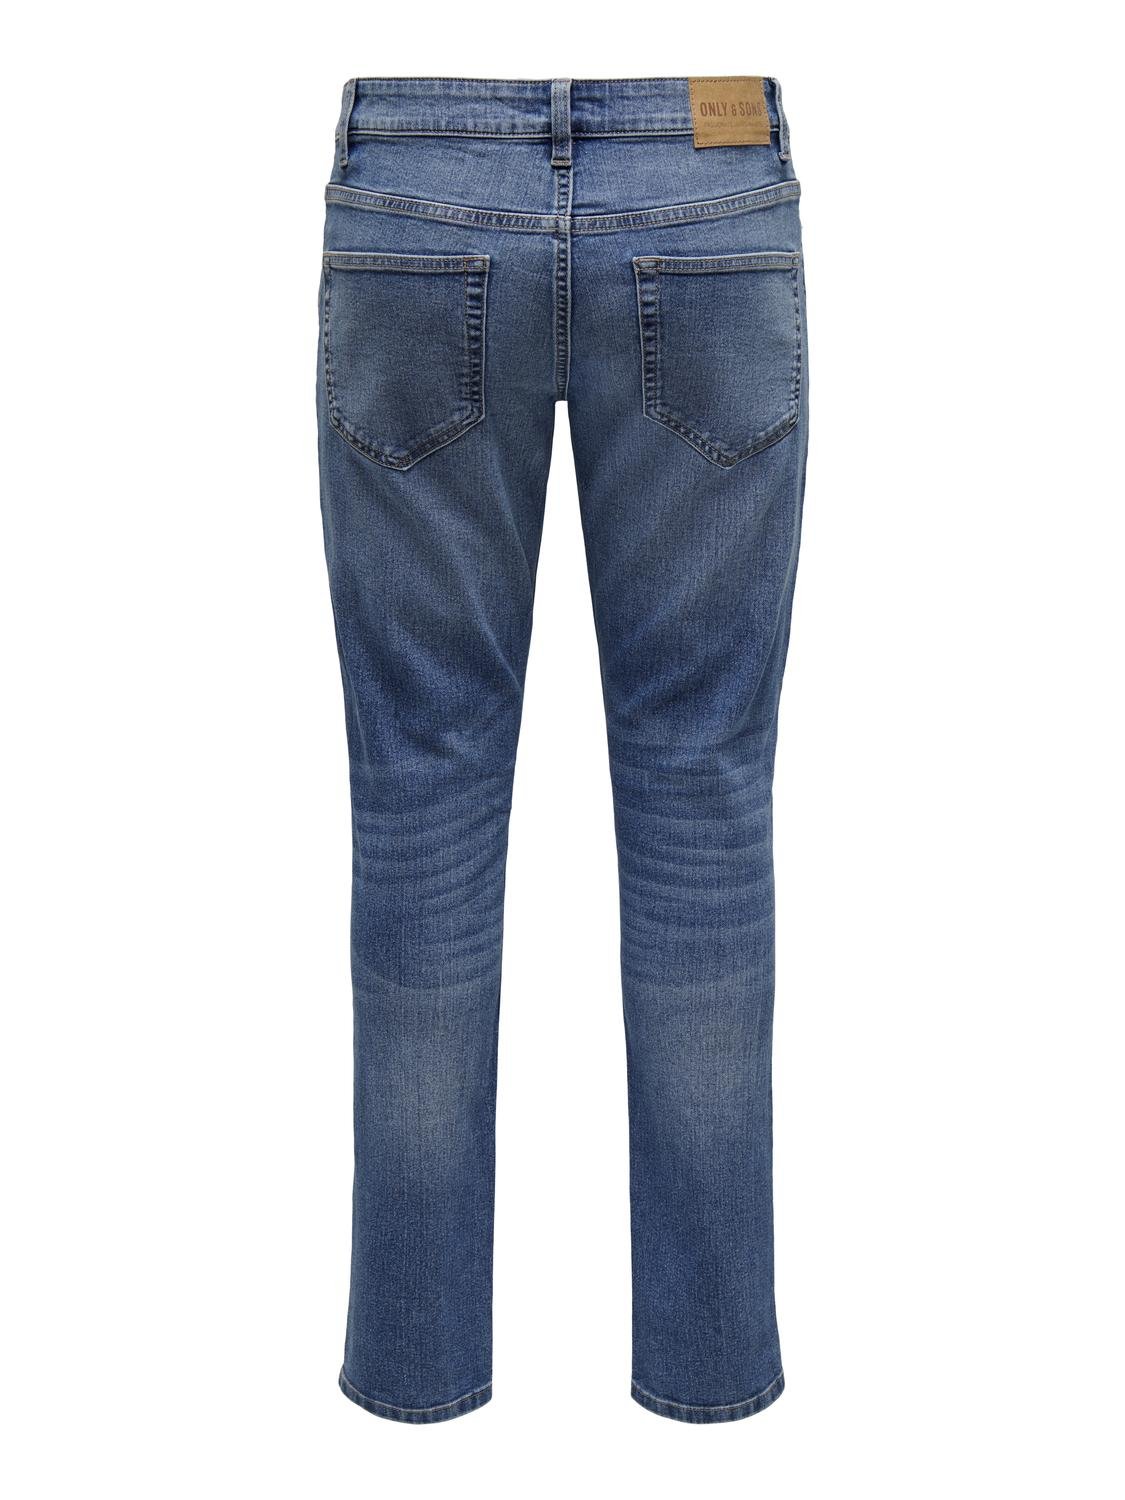 ONLY & SONS Slim Fit Middels høyt snitt Jeans -Light Medium Blue Denim - 22027899